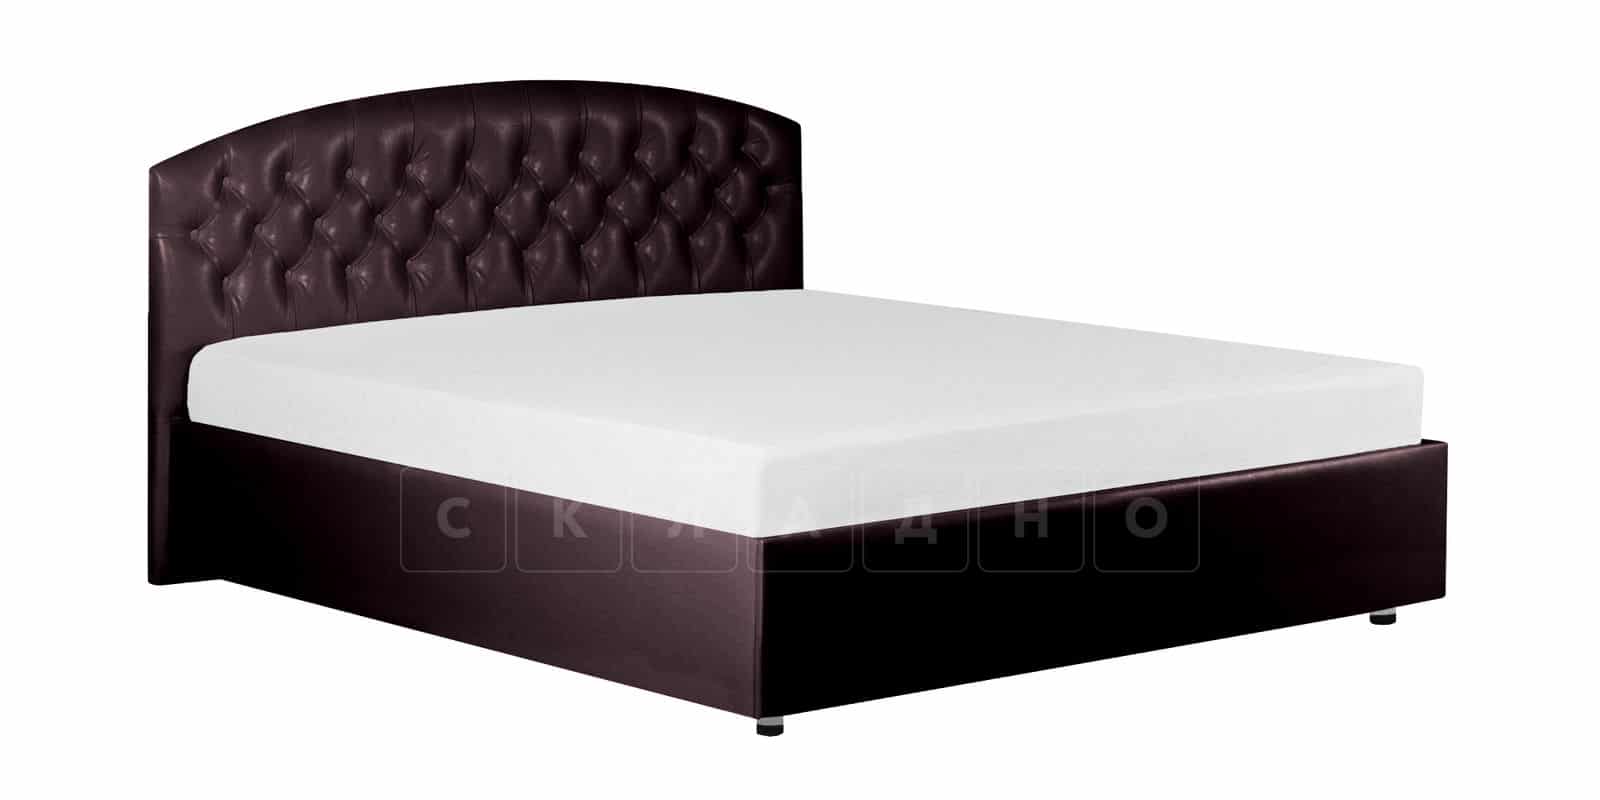 Мягкая кровать Малибу 160см экокожа шоколадного цвета вариант 1-2 фото 6 | интернет-магазин Складно